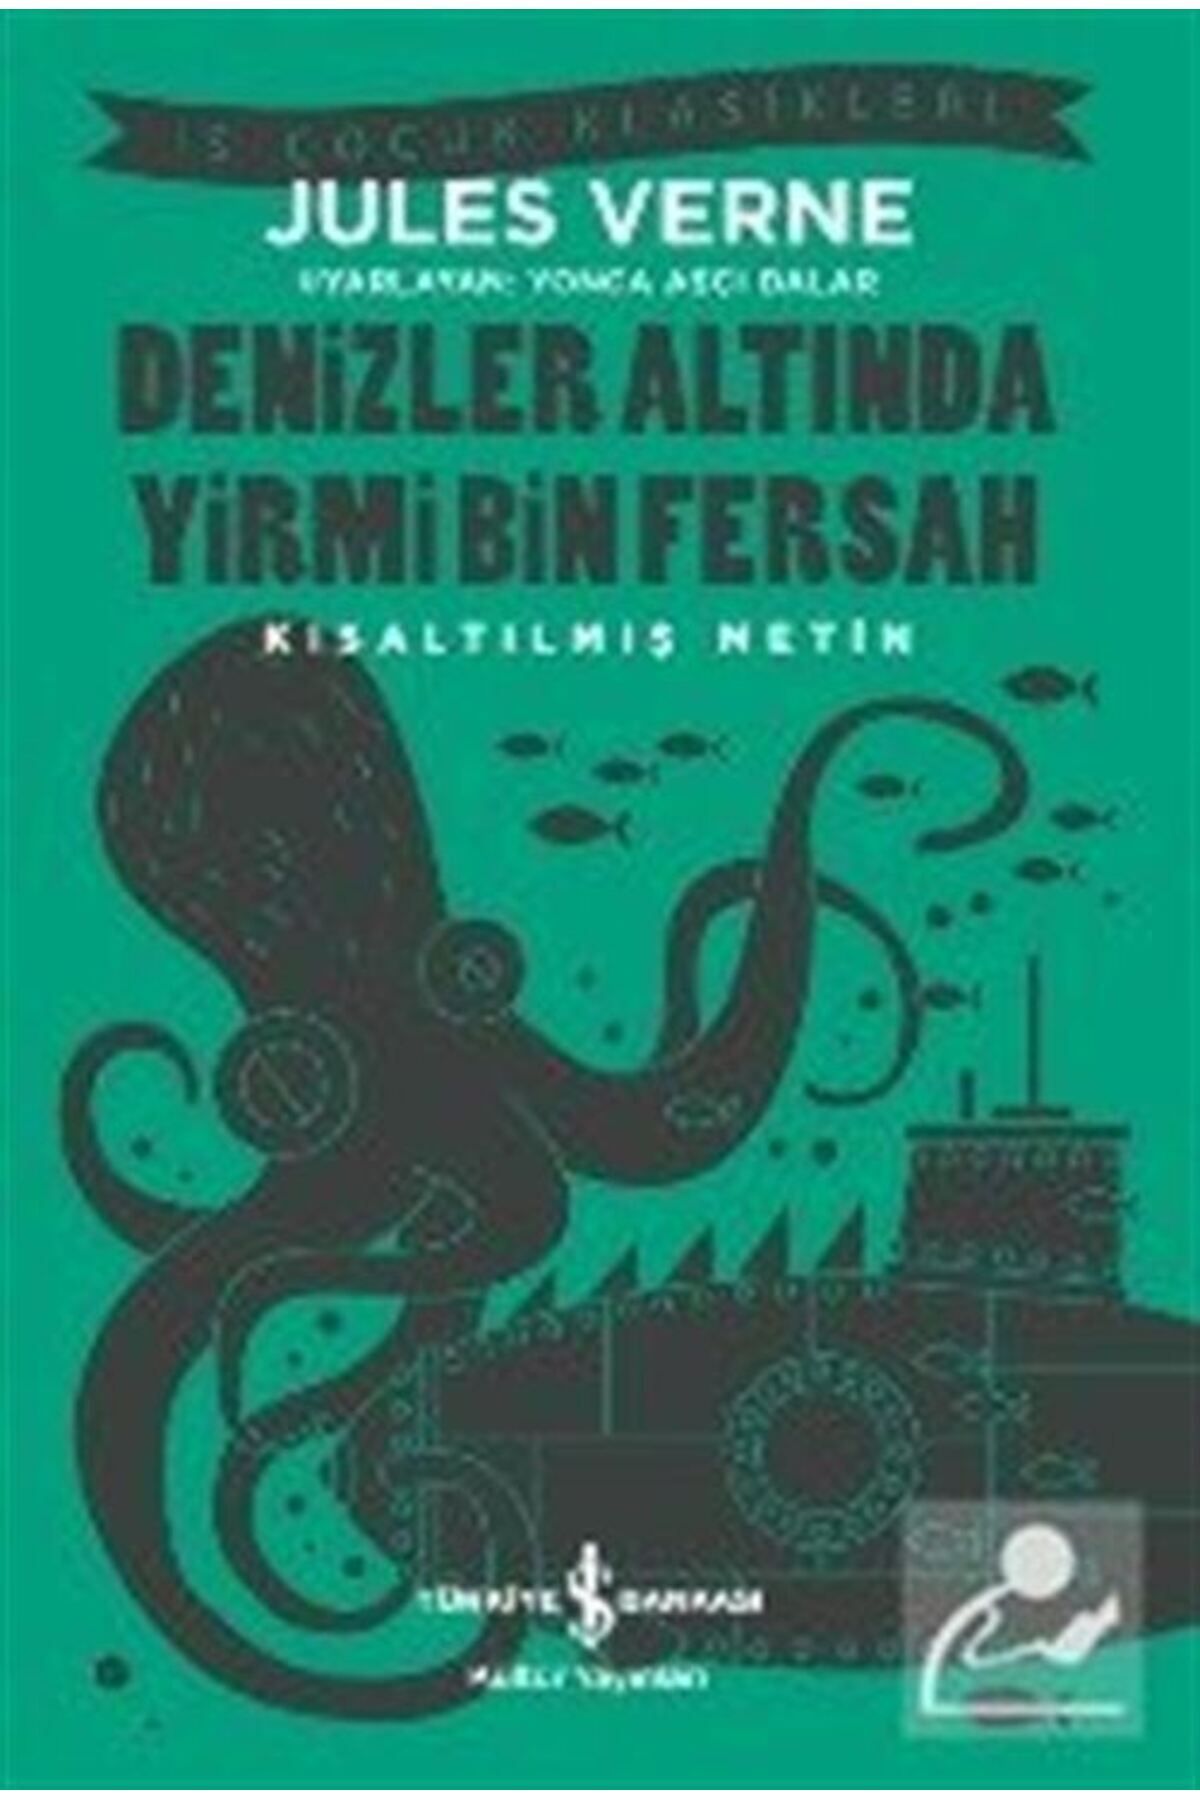 Türkiye İş Bankası Kültür Yayınları Denizler Altında Yirmi Bin Fersah (KISALTILMIŞ METİN)